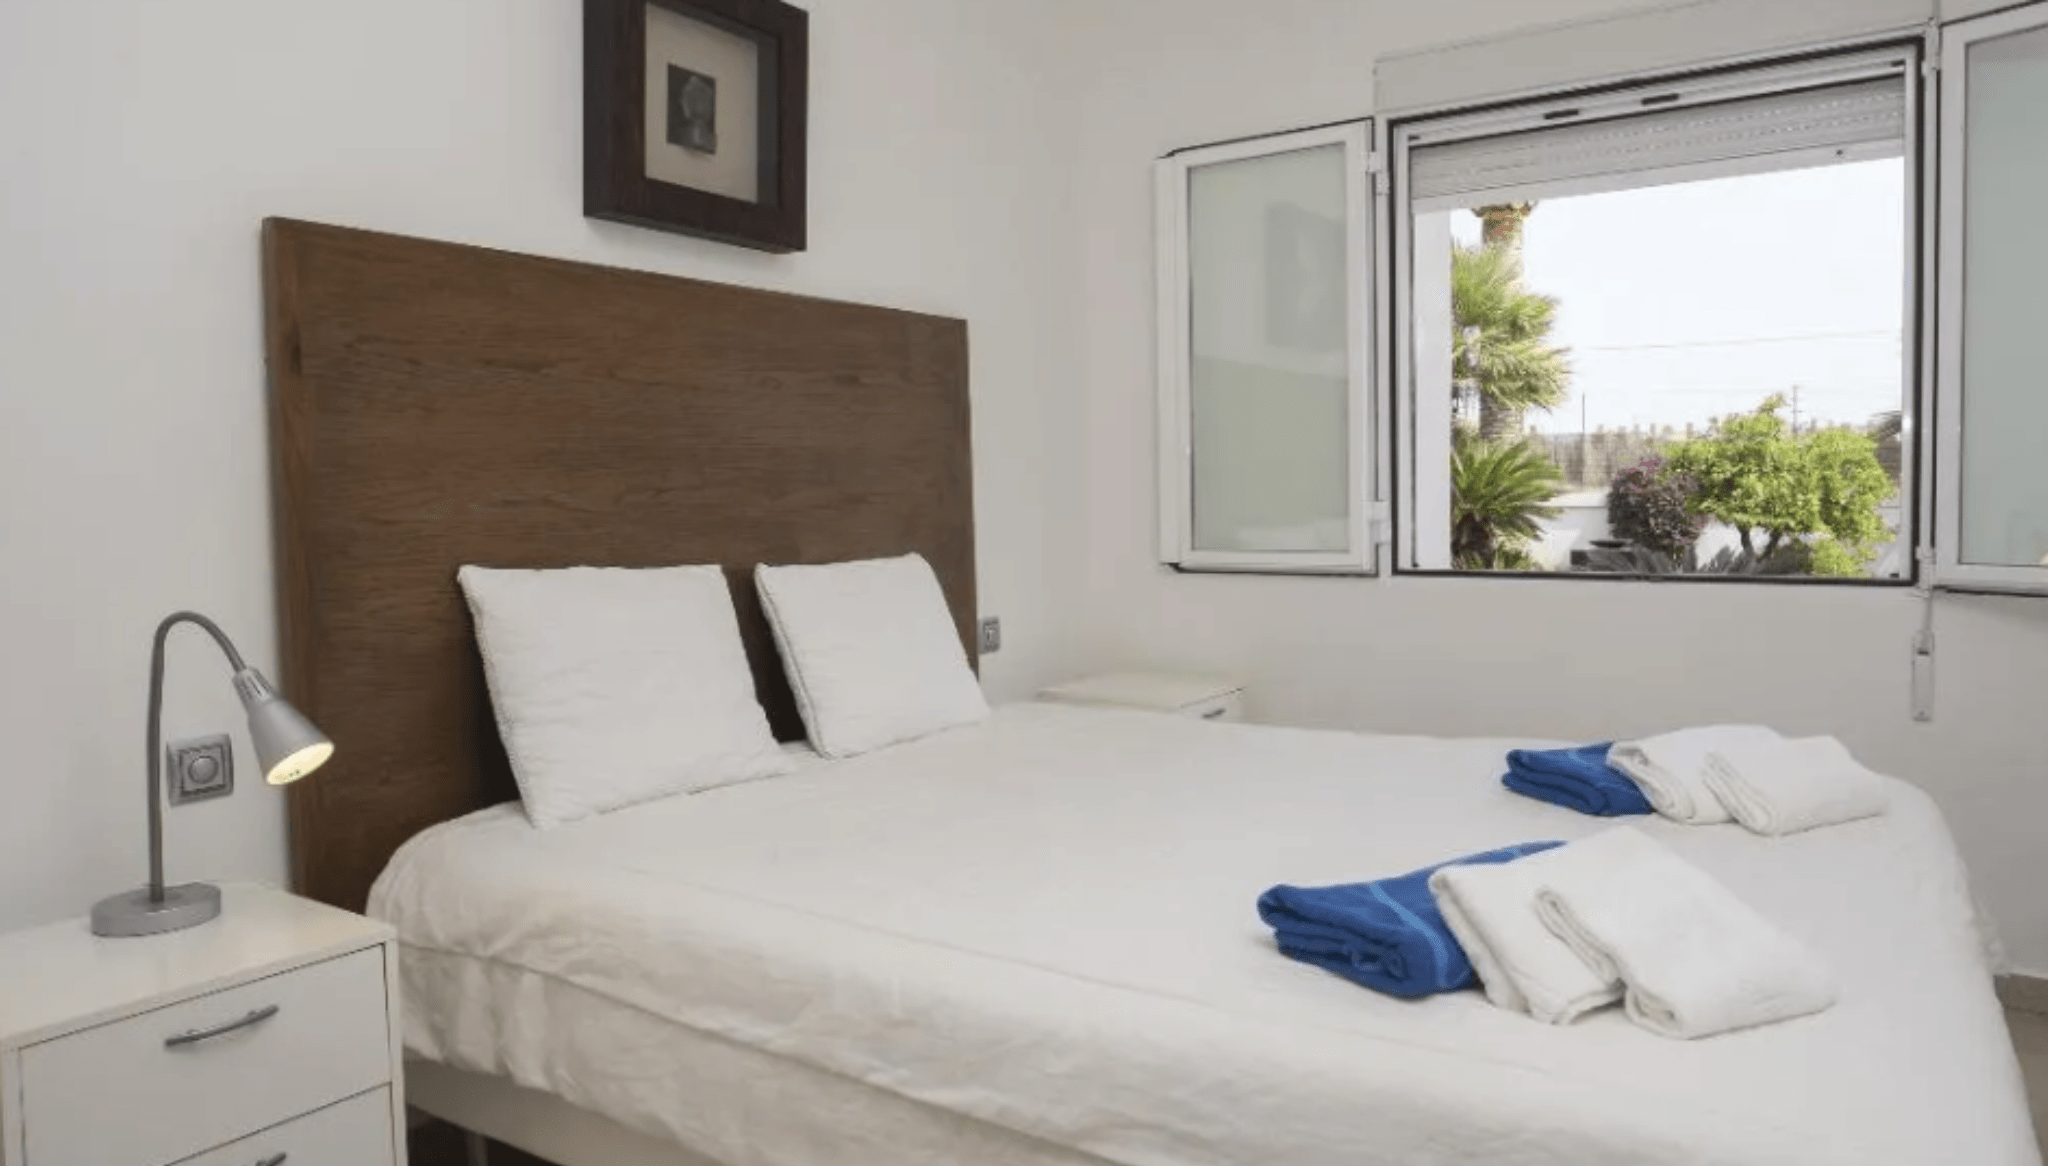 Dormitorio doble con aire acondicionado